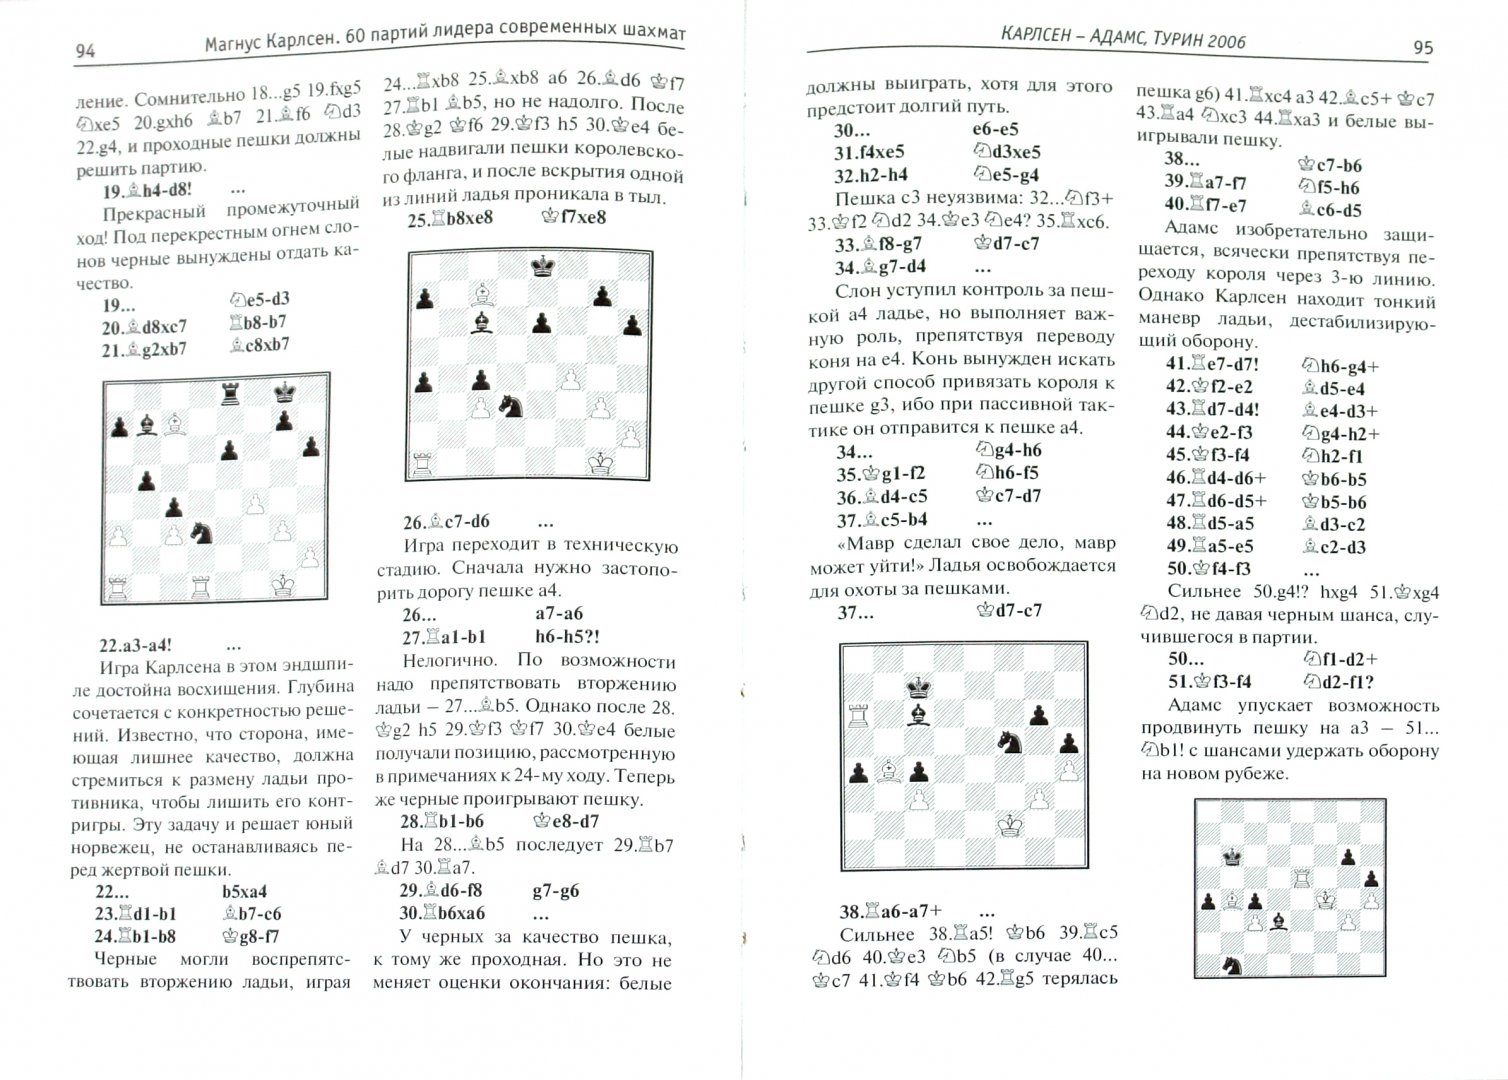 Иллюстрация 1 из 23 для Магнус Карлсен. 60 партий лидера современных шахмат - Михальчишин, Стецко | Лабиринт - книги. Источник: Лабиринт